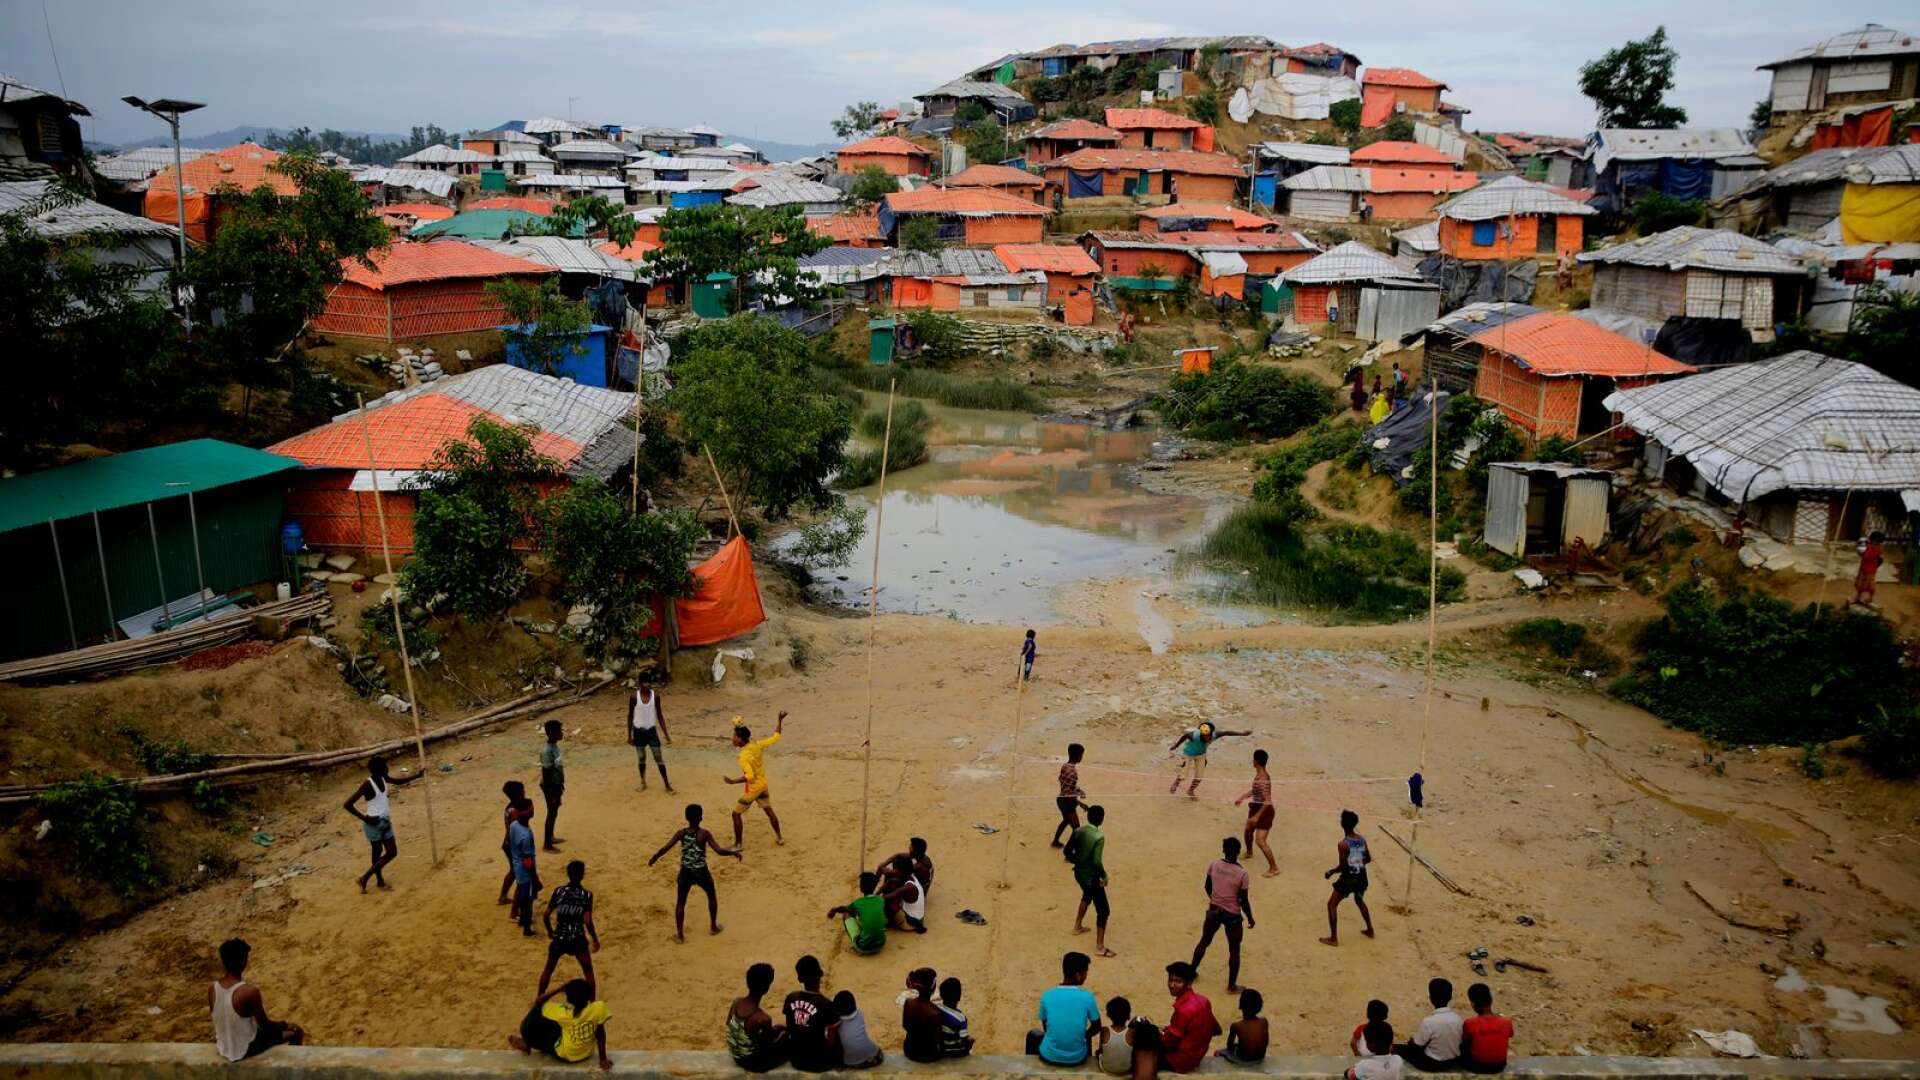 Det är tragiskt att världssamfundet inte har förmått få stopp på den våldsoffensiv som fortgår med övergrepp i både Myanmar och tillflyktslandet Bangladesh, skriver Cecilia Wikström. (Bild från flyktinglägret  Balukhali i Bangladesh.)